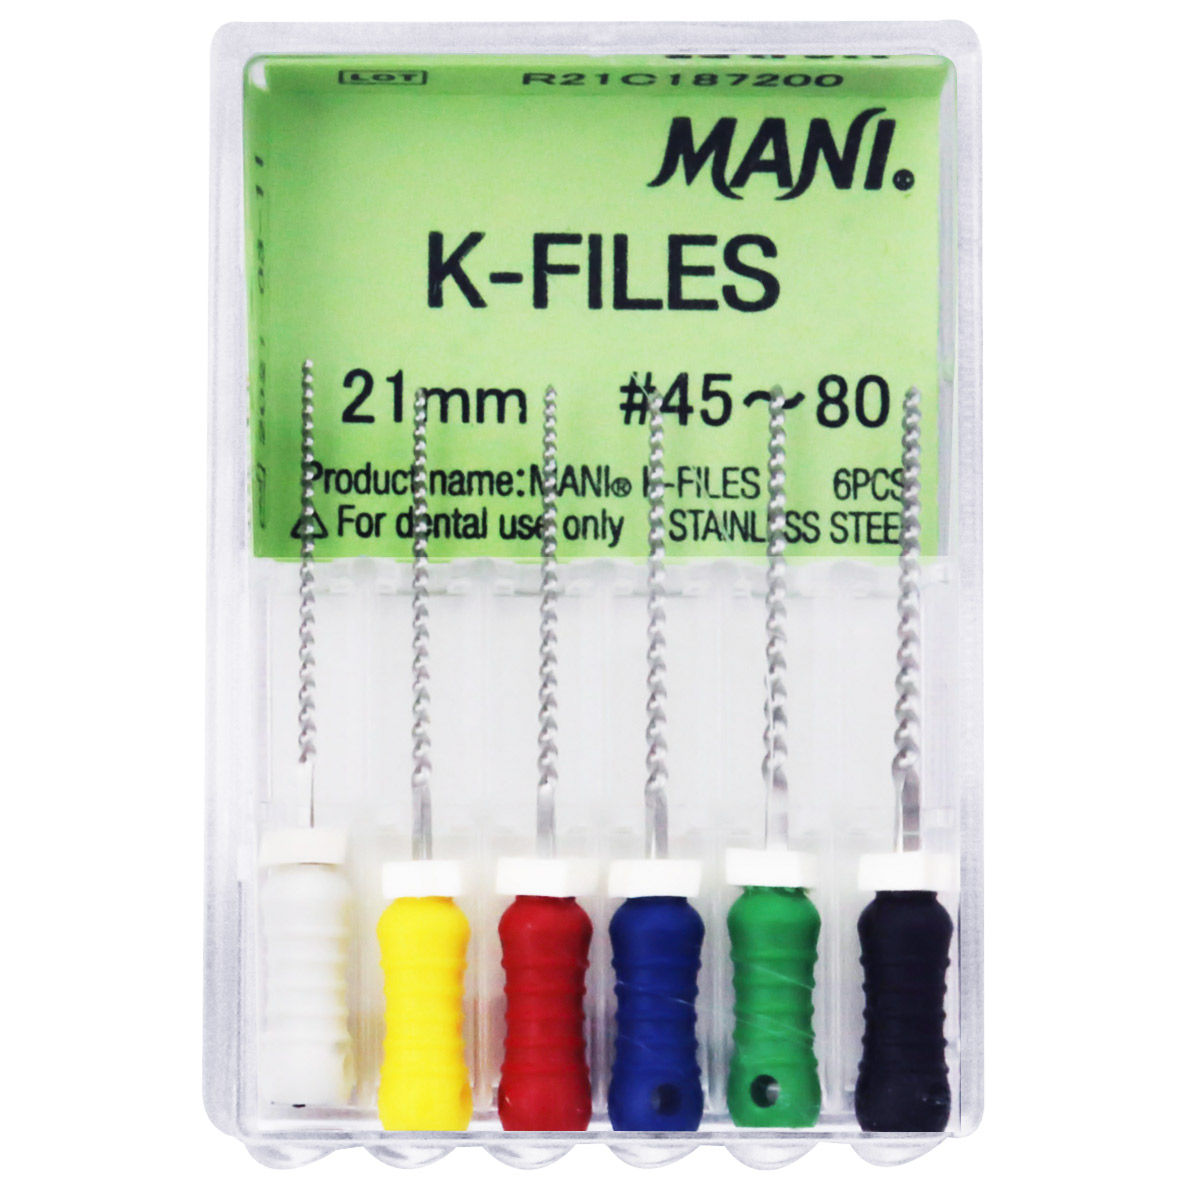 K-File 21mm #55 - Mani